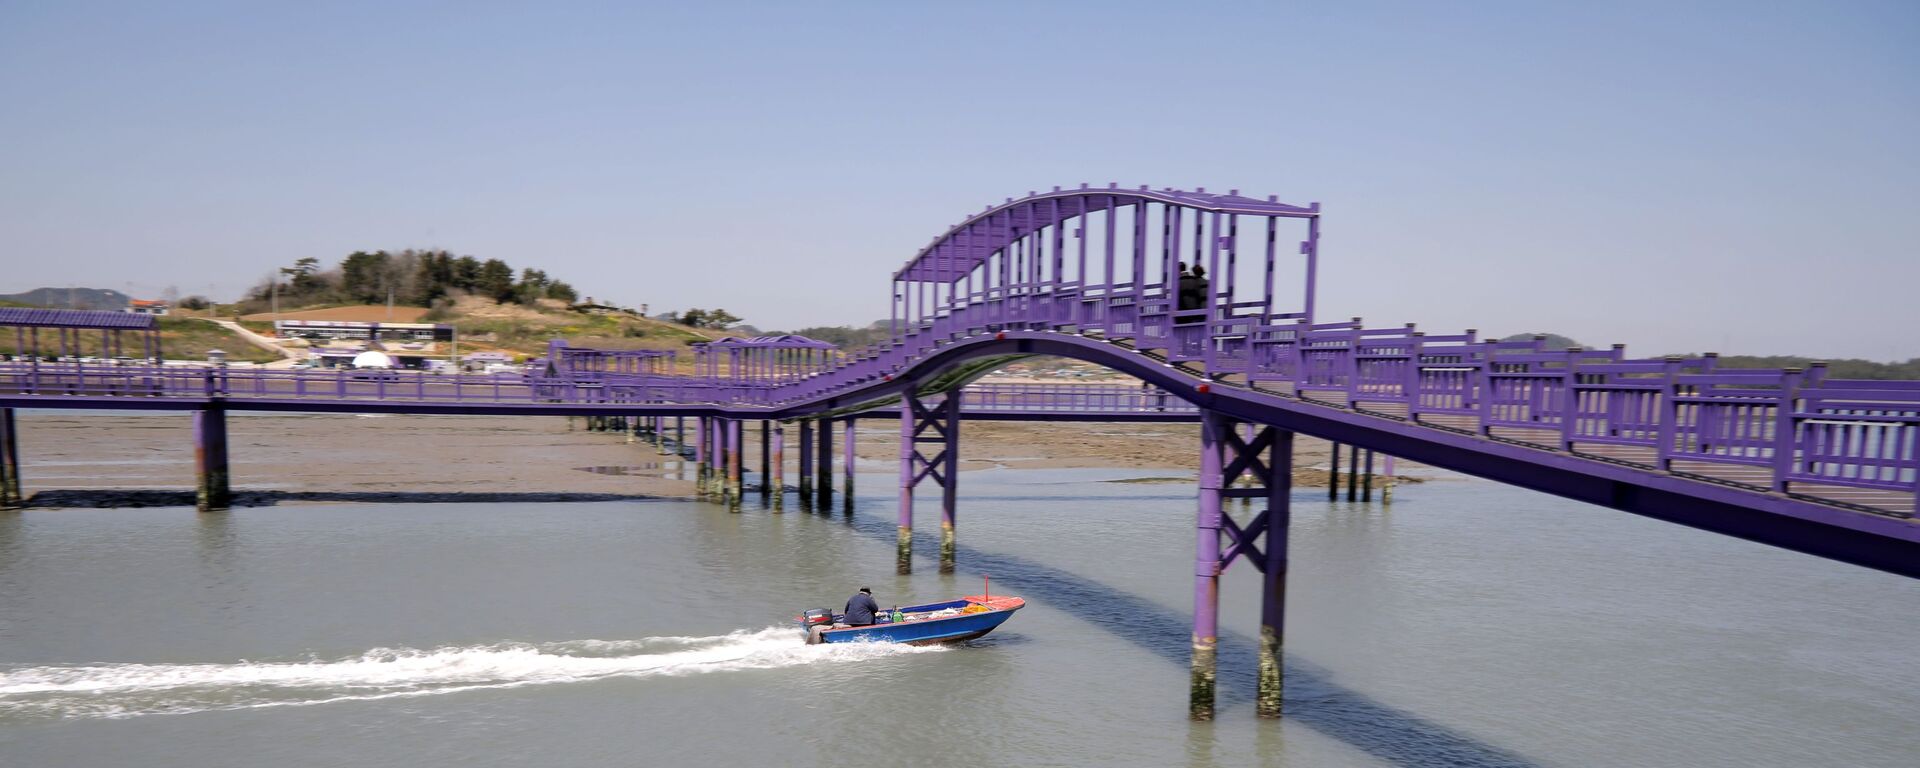 الجسر البنفسجي (جسر الملاك) الذي يربط جزيرتي بانفول وباركجي في محافظة تشلا الجنوبية في كوريا الجنوبية، 6 أبريل 2021 - سبوتنيك عربي, 1920, 28.08.2021